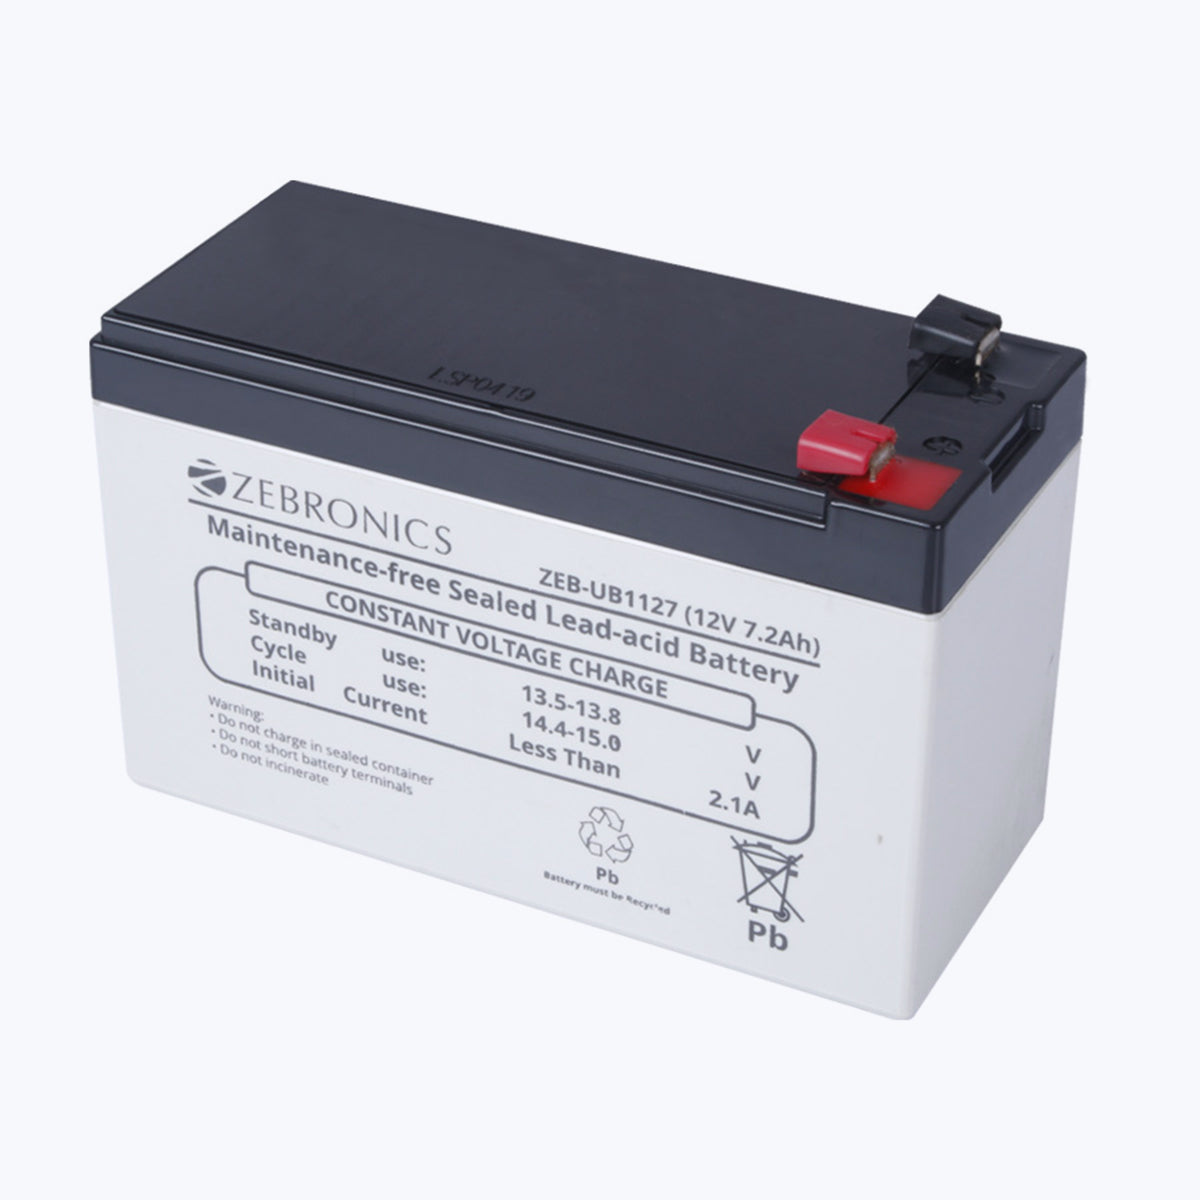 Zeb-UB1127 - Sealed Maintenance free Lead-acid battery - Zebronics